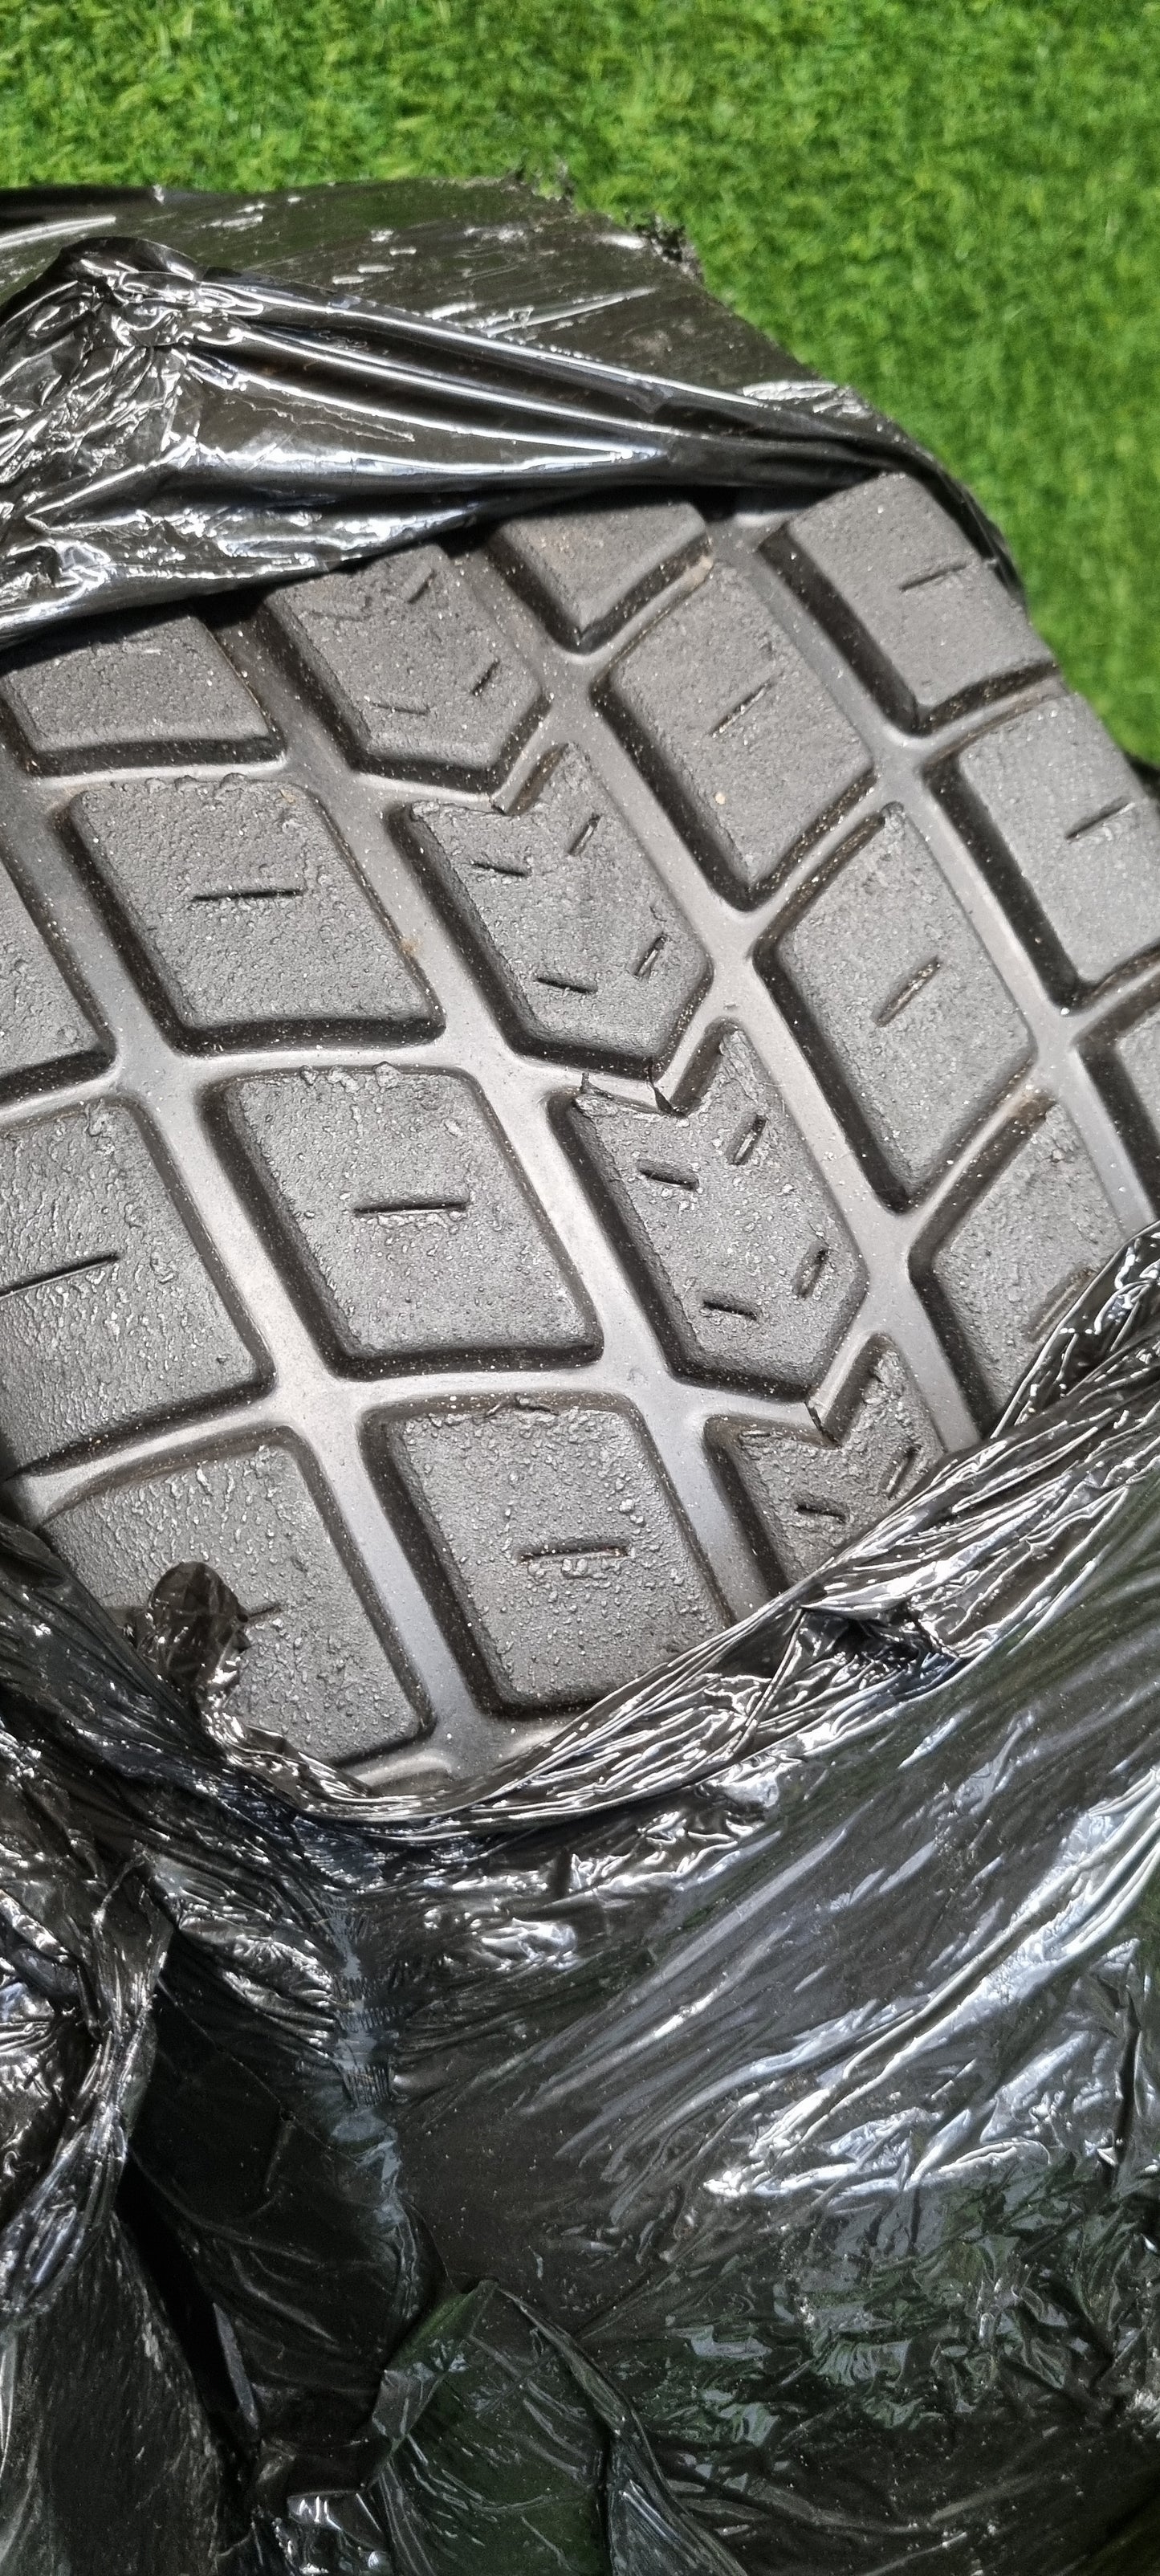 Avon 180/565/13 Wet Racing / Trackday Tyres PR 02